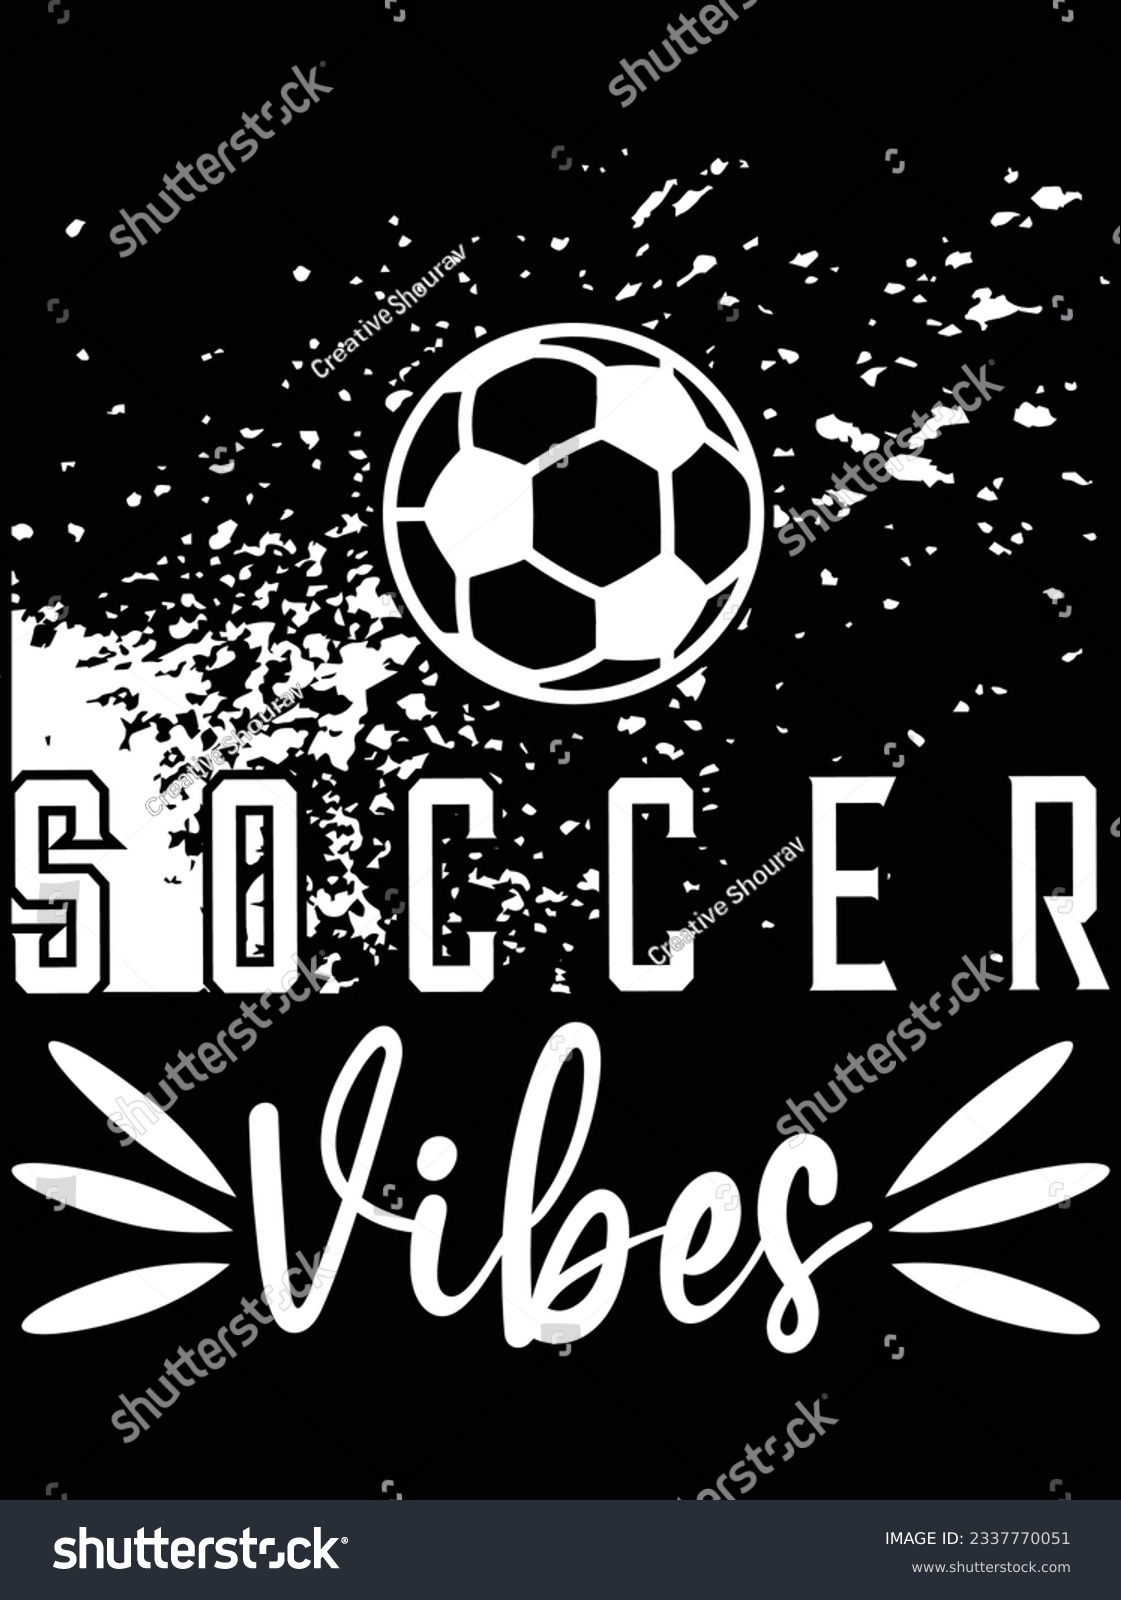 SVG of Soccer vibes vector art design, eps file. design file for t-shirt. SVG, EPS cuttable design file svg